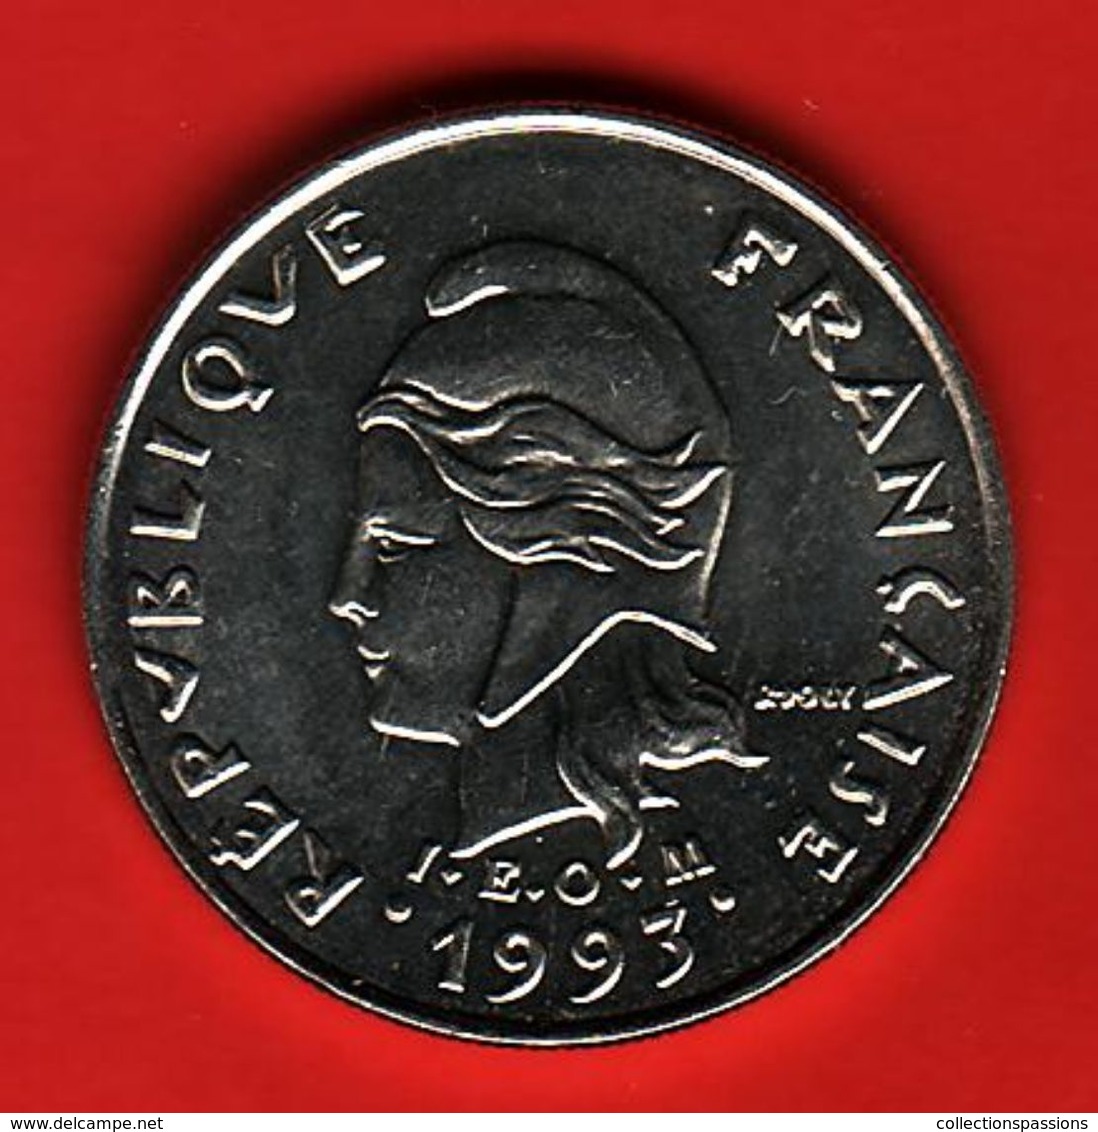 - POLYNESIE FRANCAISE - 10 Francs - 1993 - - Polinesia Francesa